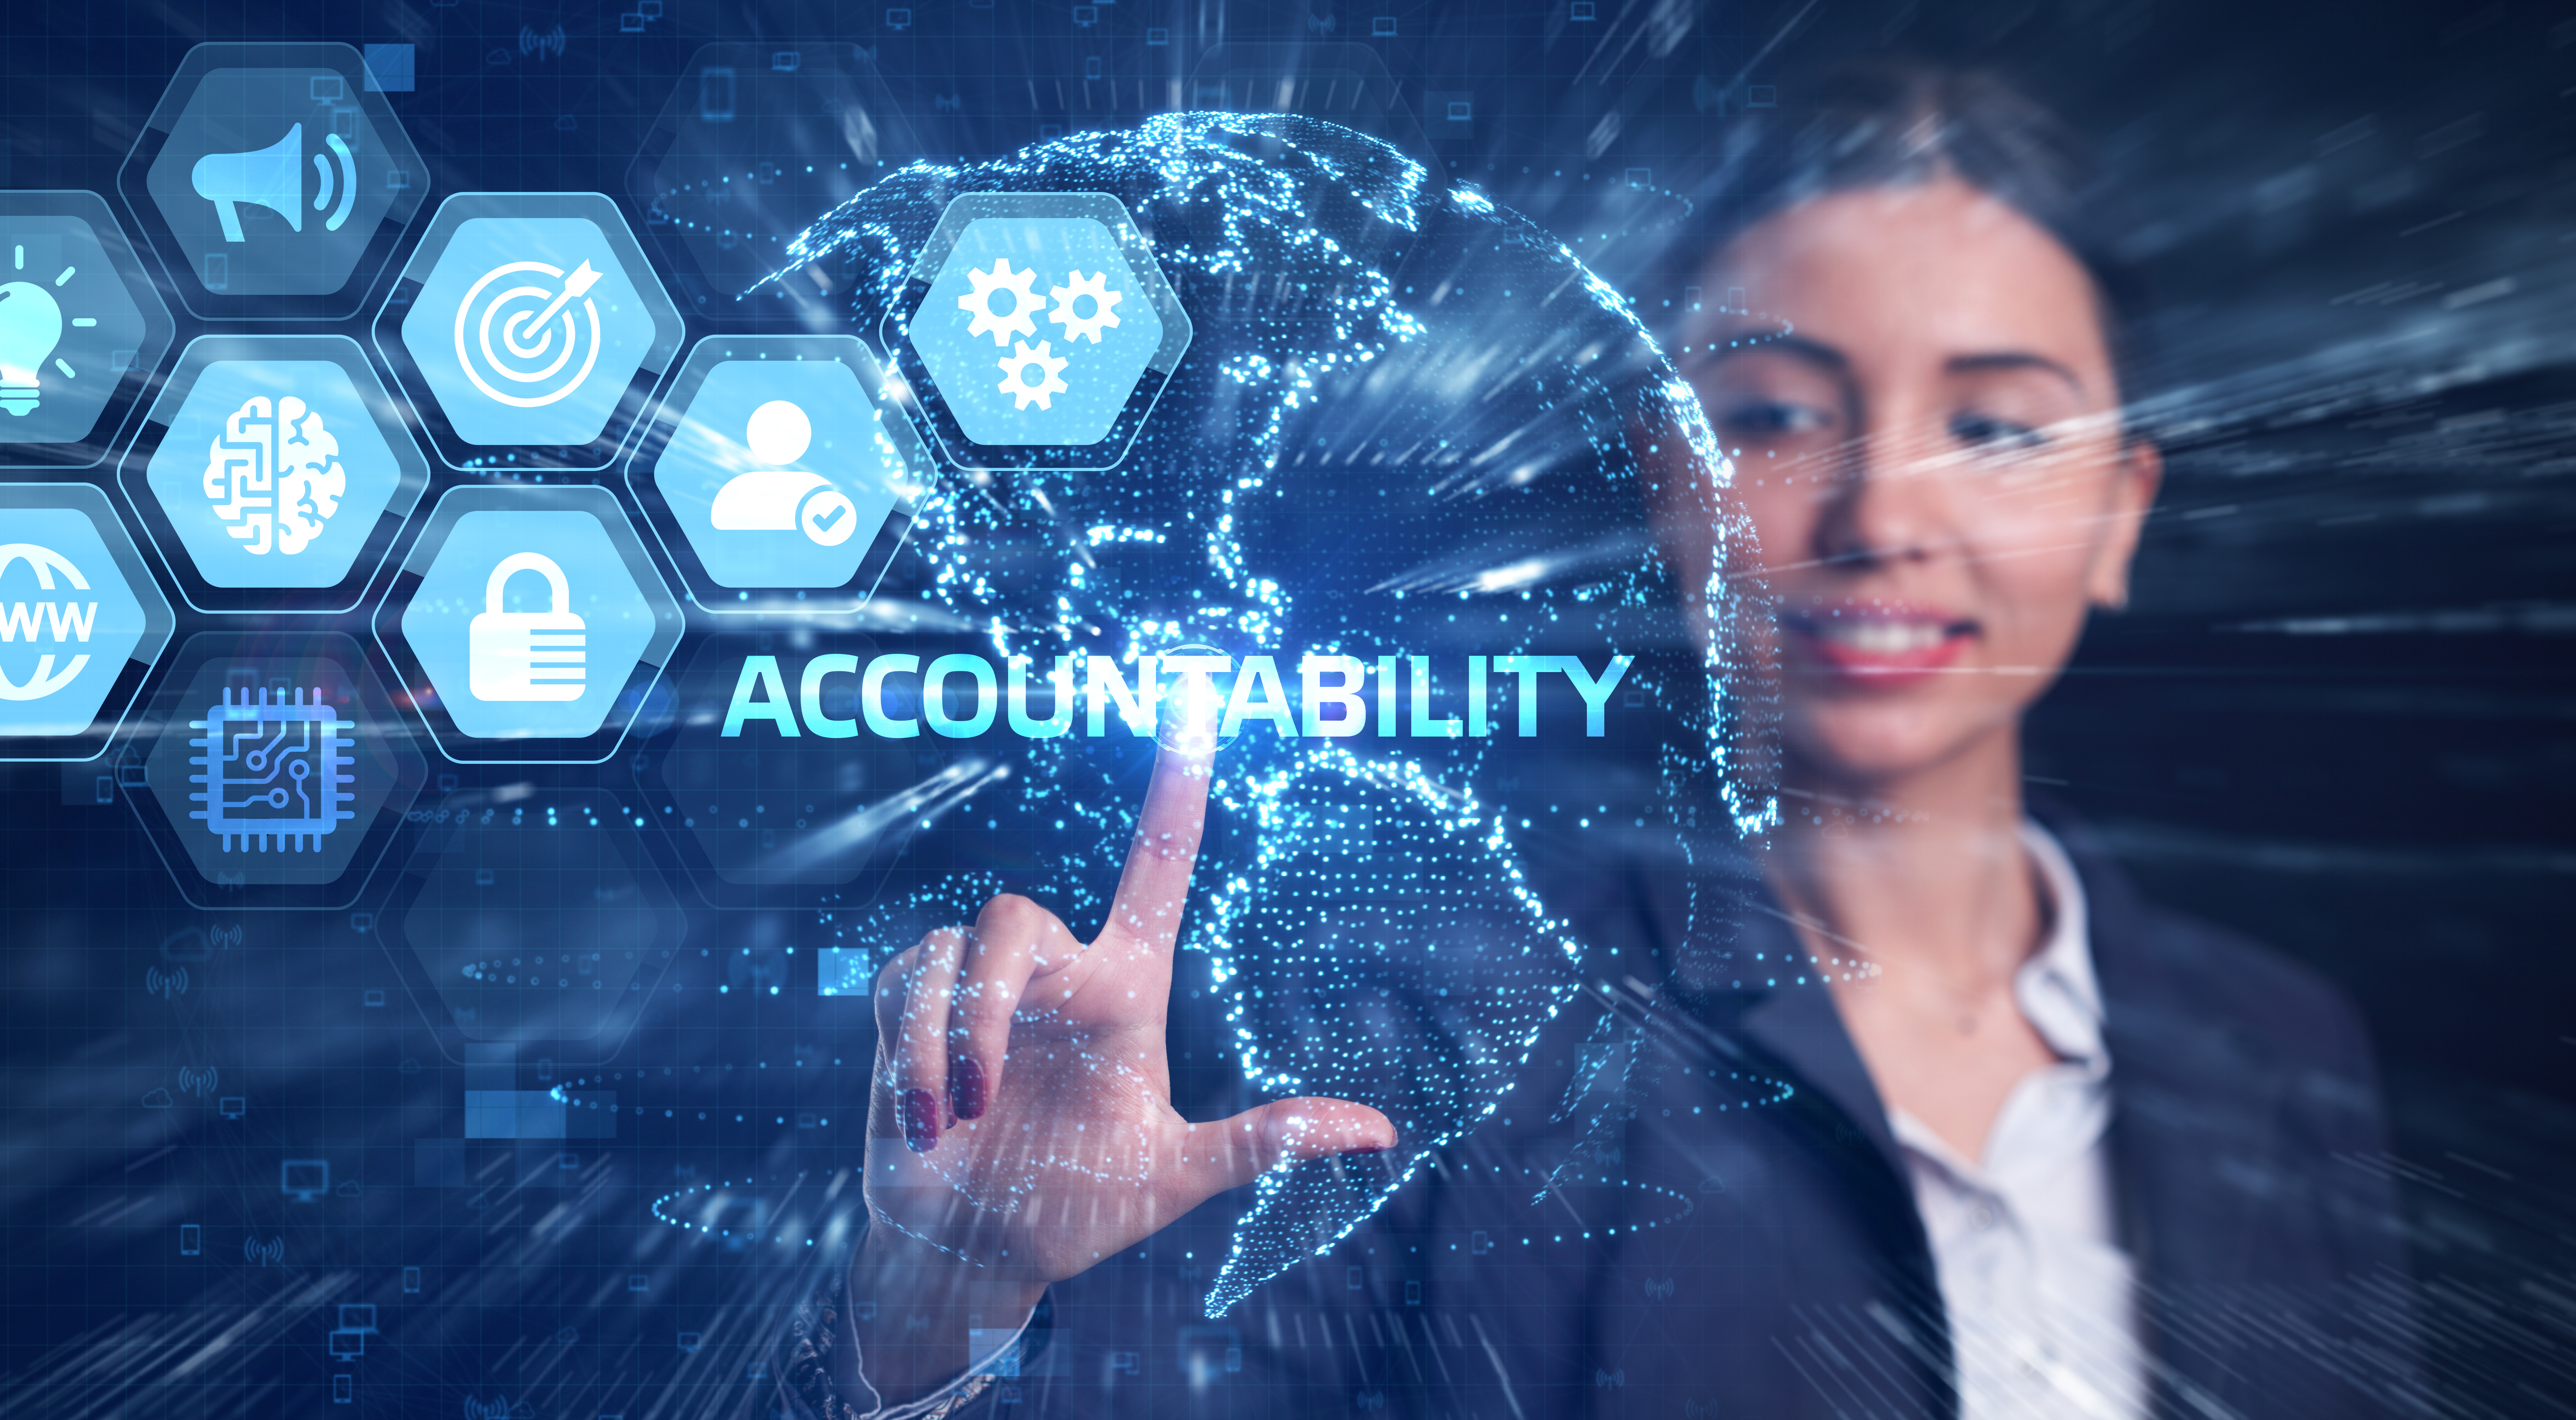 Taller sobre Accountability